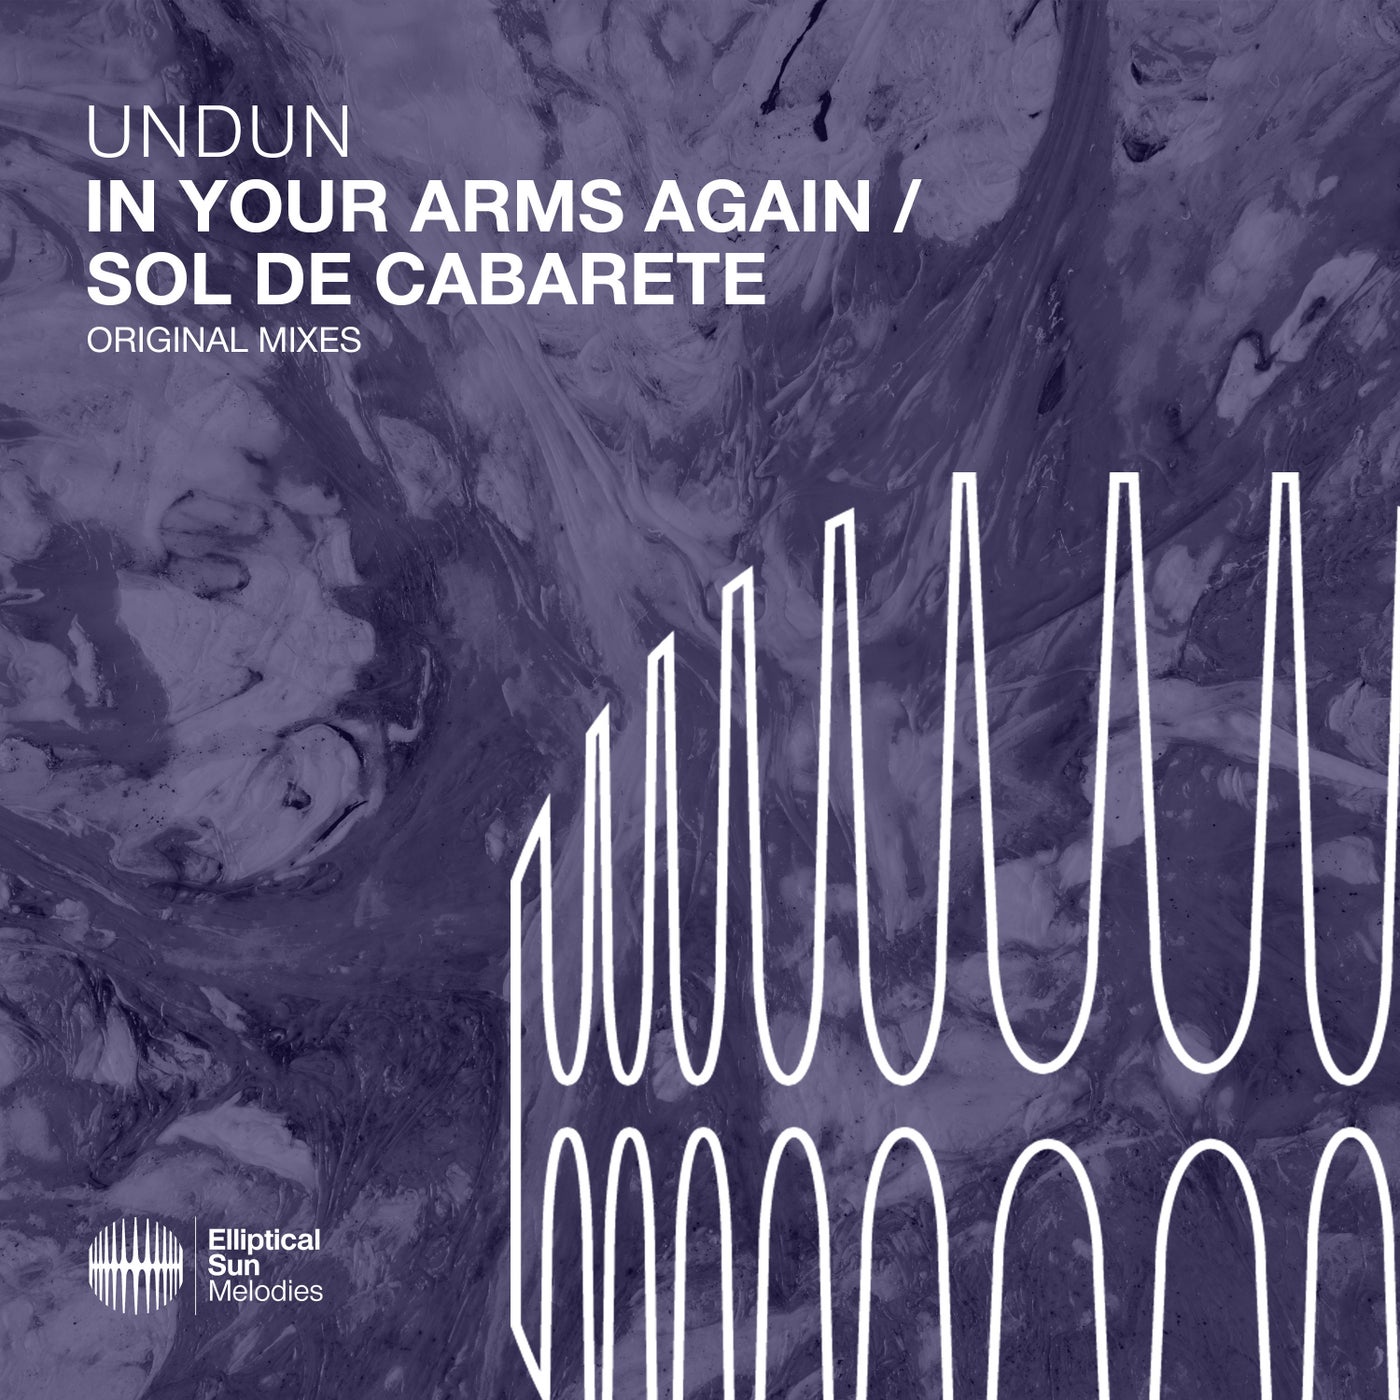 In Your Arms Again / Sol De Cabarete